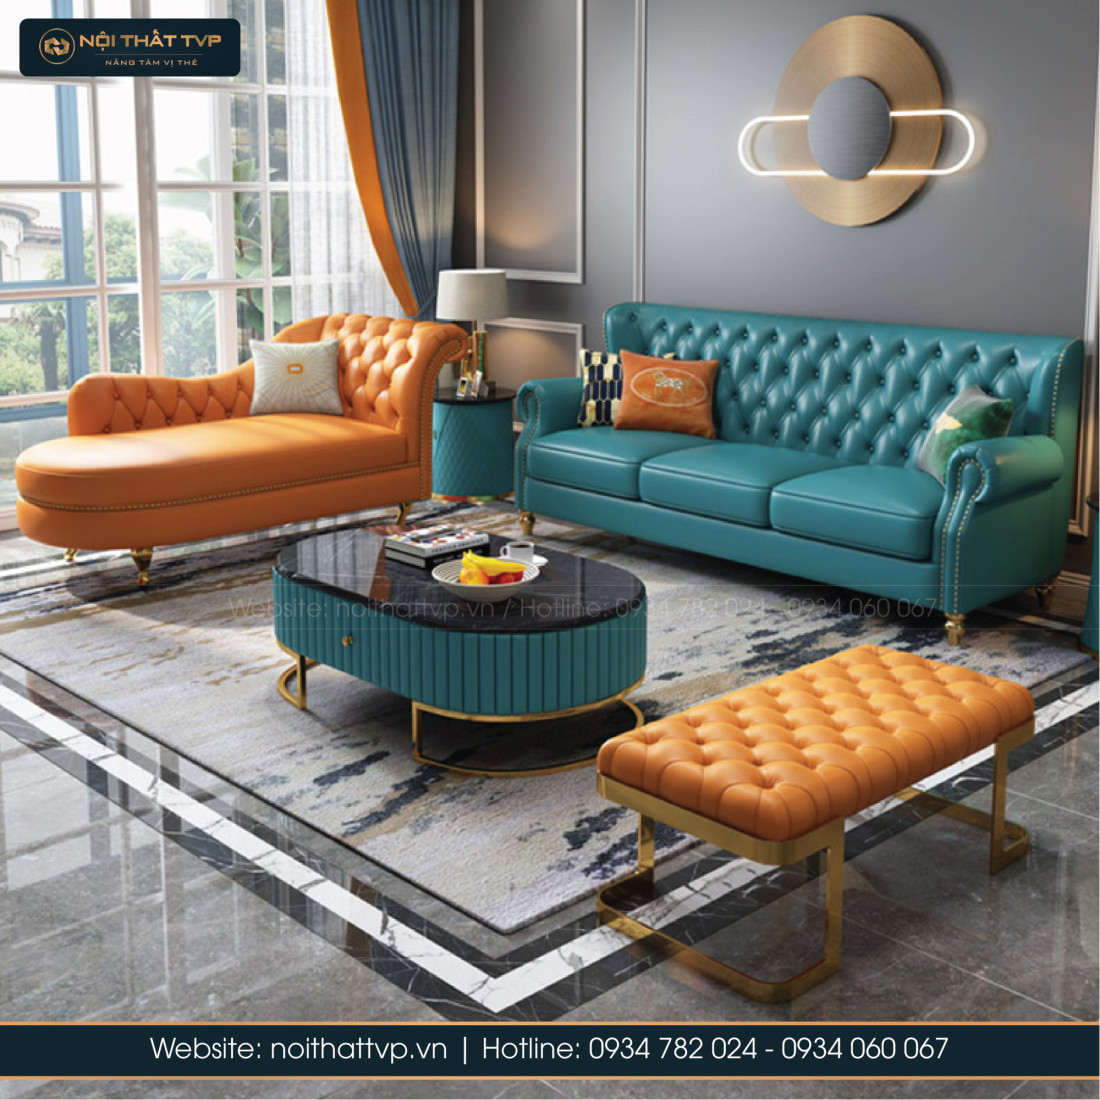 Đã đến lúc thay đổi không gian phòng khách của bạn với chiếc sofa nhập khẩu chất lượng cao. Được lựa chọn từ những nơi sản xuất nổi tiếng trên thế giới, các chiếc sofa nhập khẩu đem lại vẻ đẹp sang trọng và độc đáo cho không gian sống của bạn.